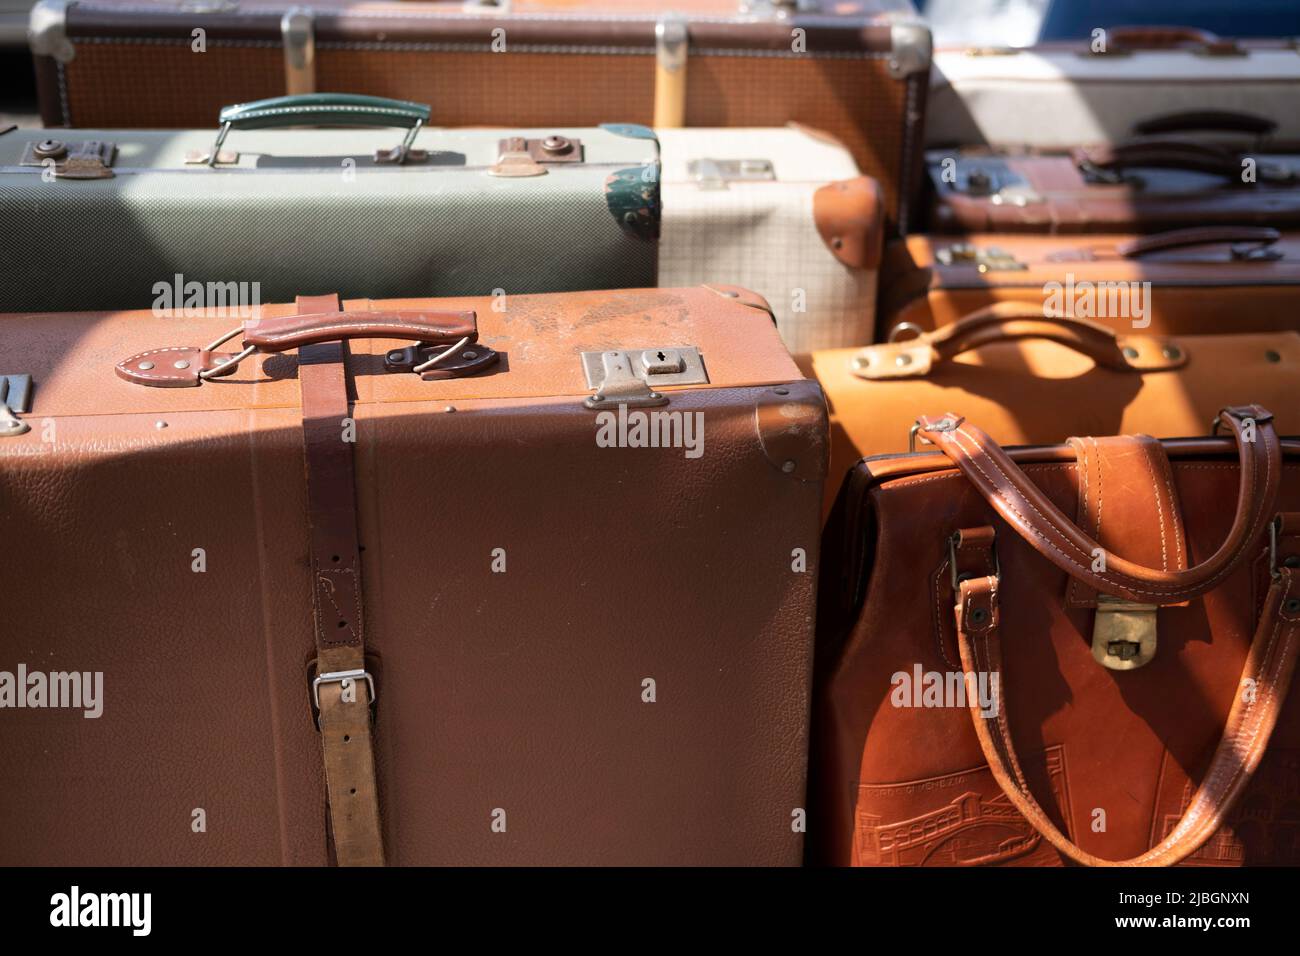 Bagages et valises dans le coffre d'un vus Photo Stock - Alamy